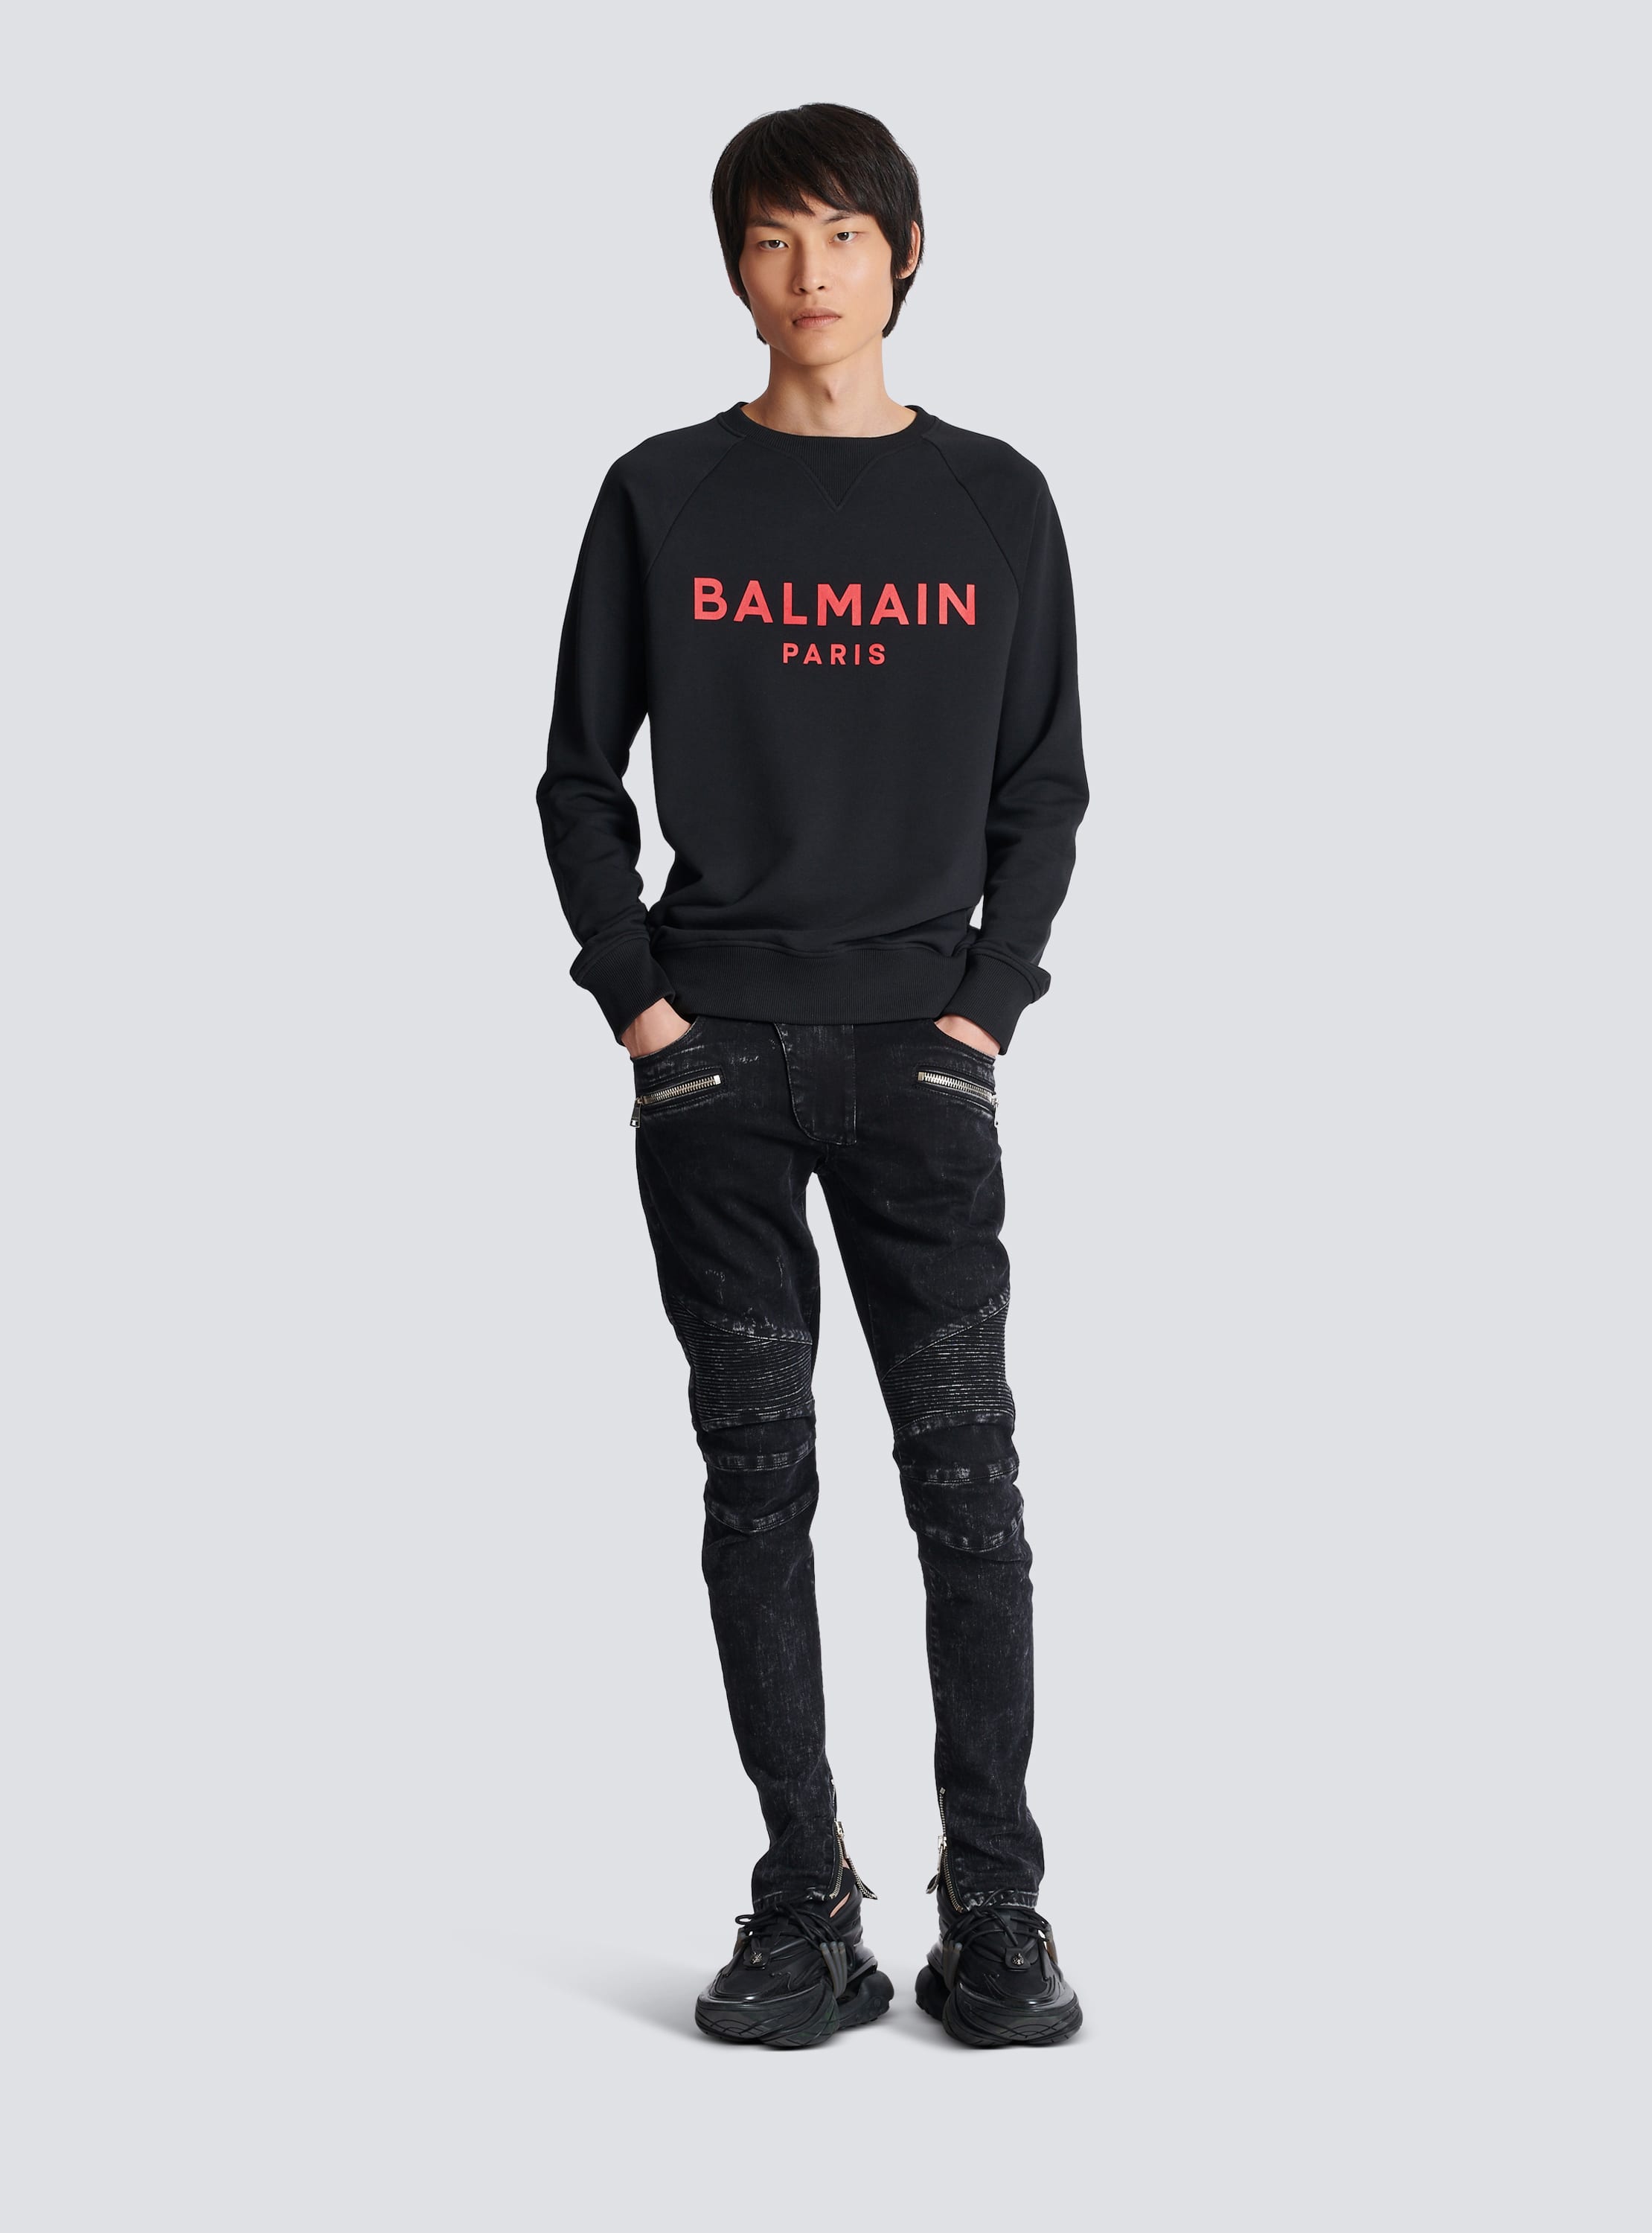 Balmain Paris printed sweatshirt 